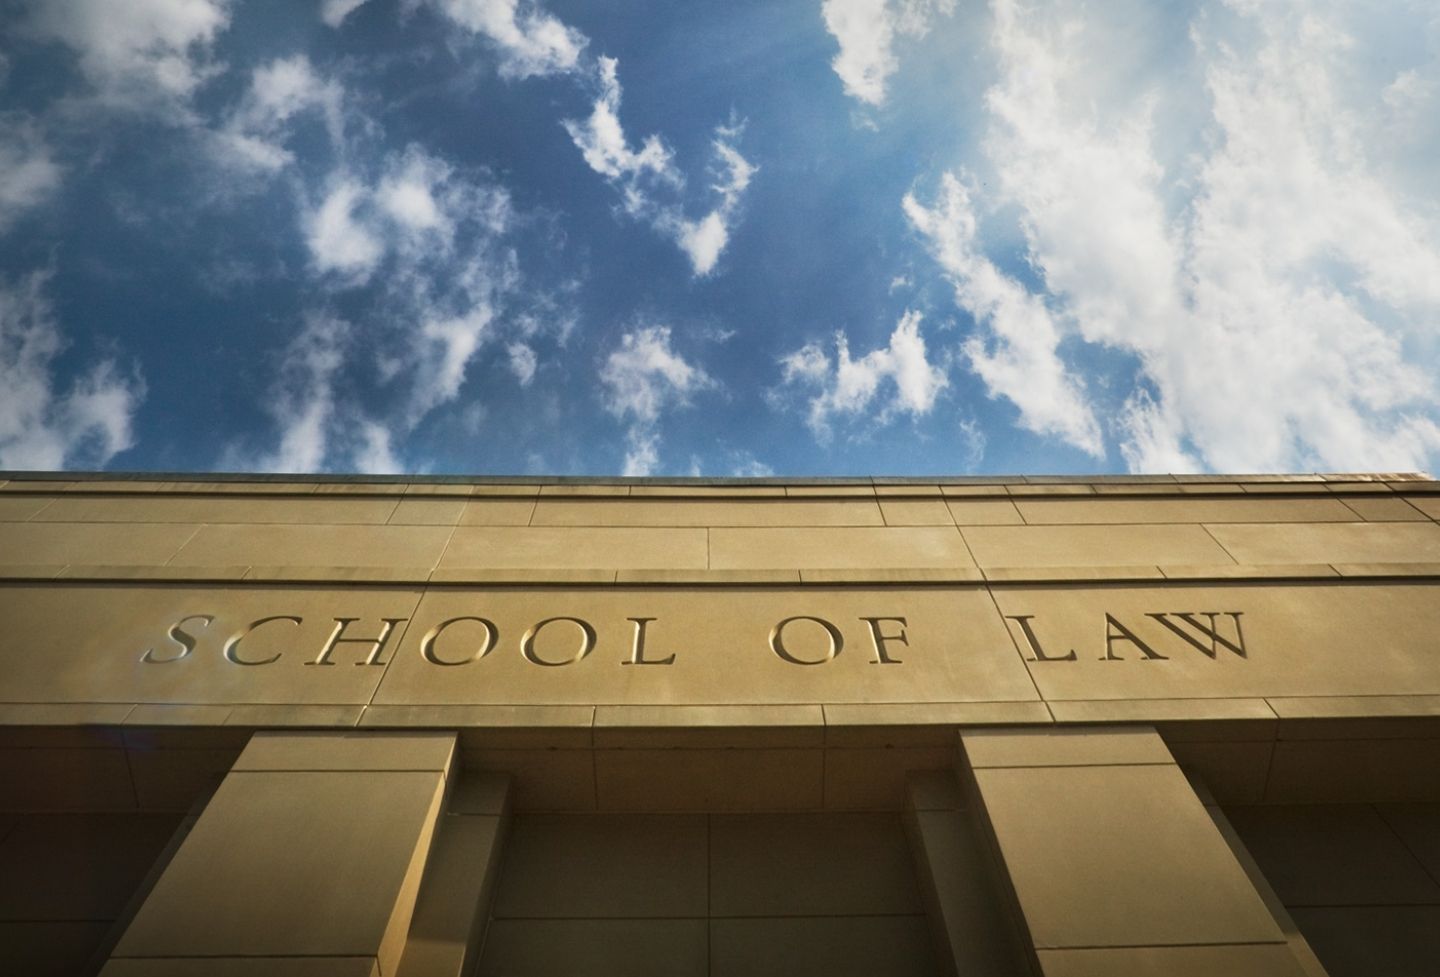 UVA Law School building facade